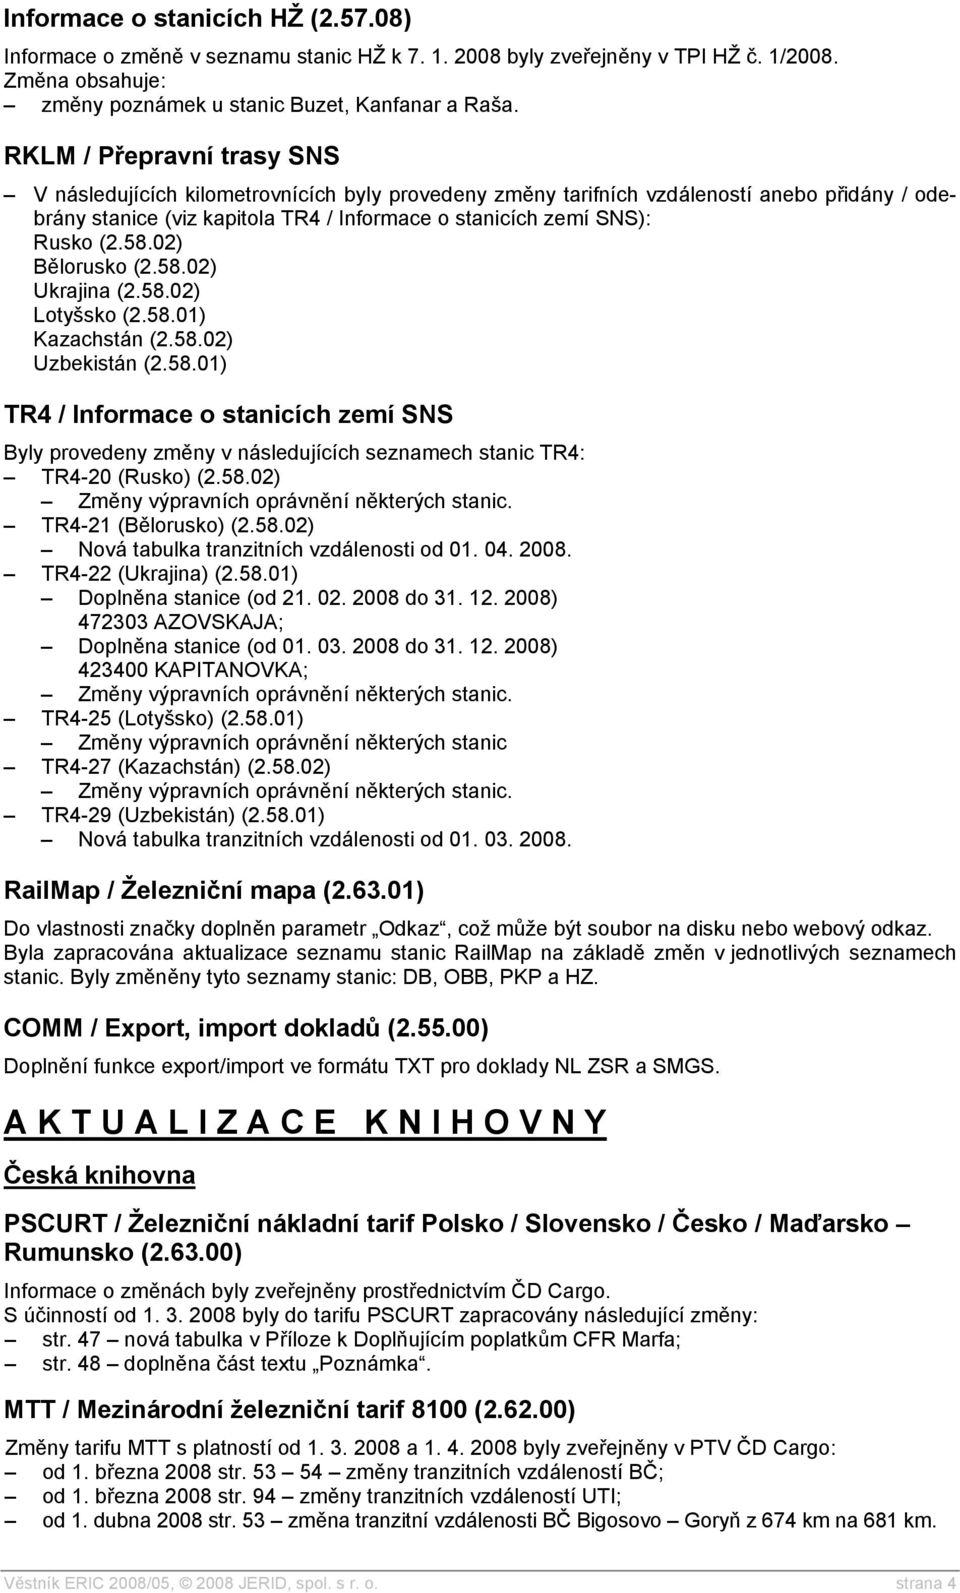 58.02) Bělorusko (2.58.02) Ukrajina (2.58.02) Lotyšsko (2.58.01) Kazachstán (2.58.02) Uzbekistán (2.58.01) TR4 / Informace o stanicích zemí SNS Byly provedeny změny v následujících seznamech stanic TR4: TR4-20 (Rusko) (2.